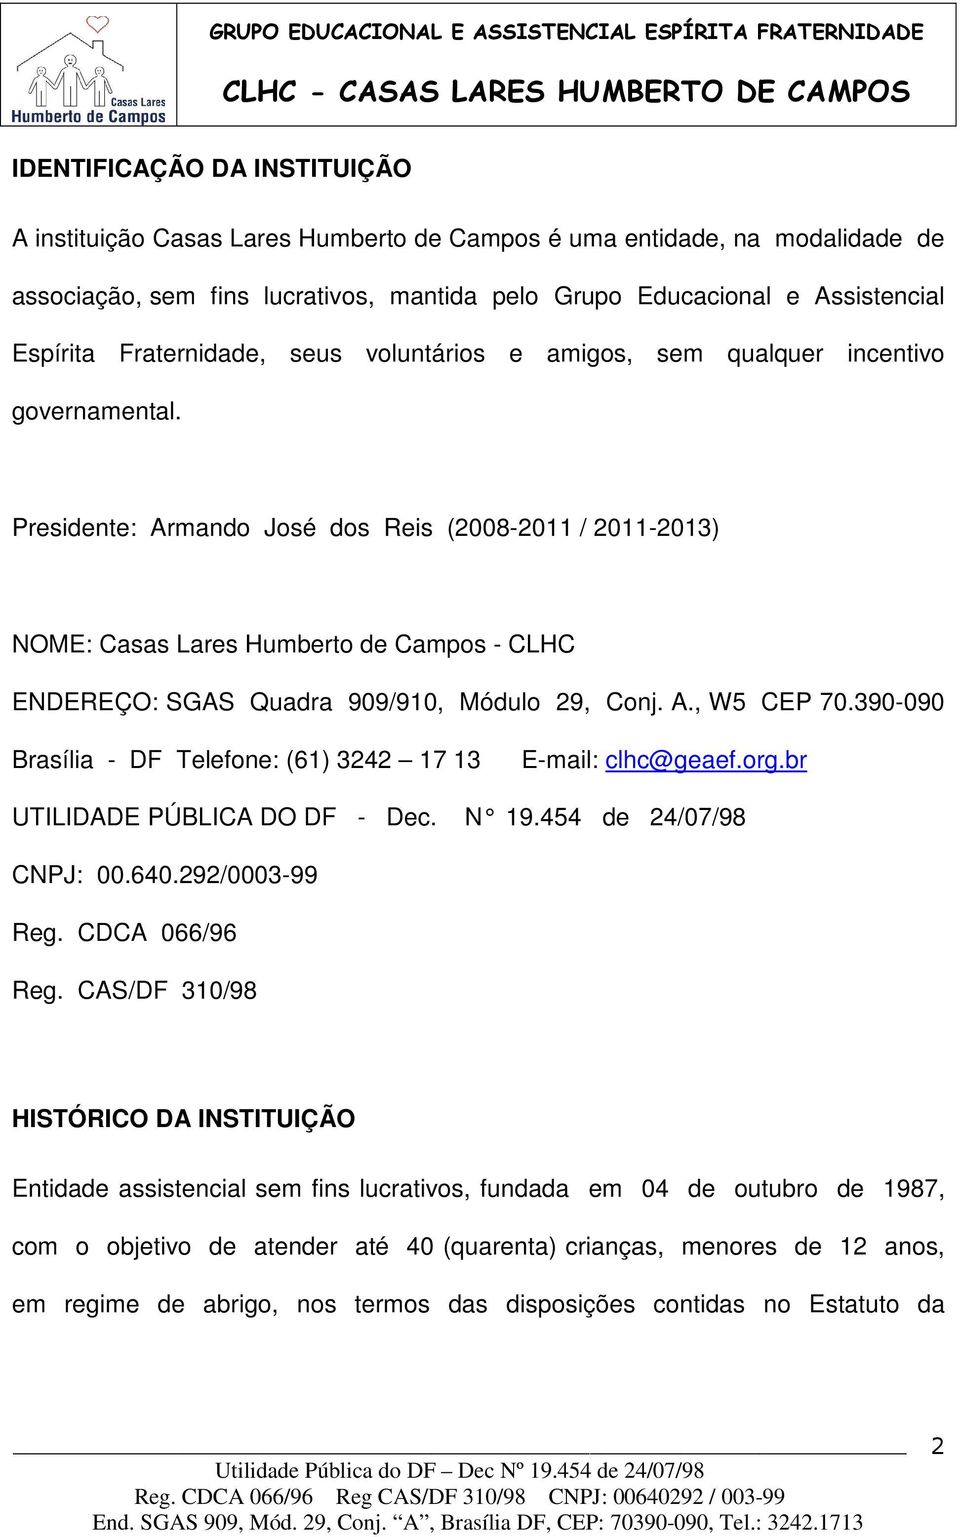 Presidente: Armando José dos Reis (2008-2011 / 2011-2013) NOME: Casas Lares Humberto de Campos - CLHC ENDEREÇO: SGAS Quadra 909/910, Módulo 29, Conj. A., W5 CEP 70.